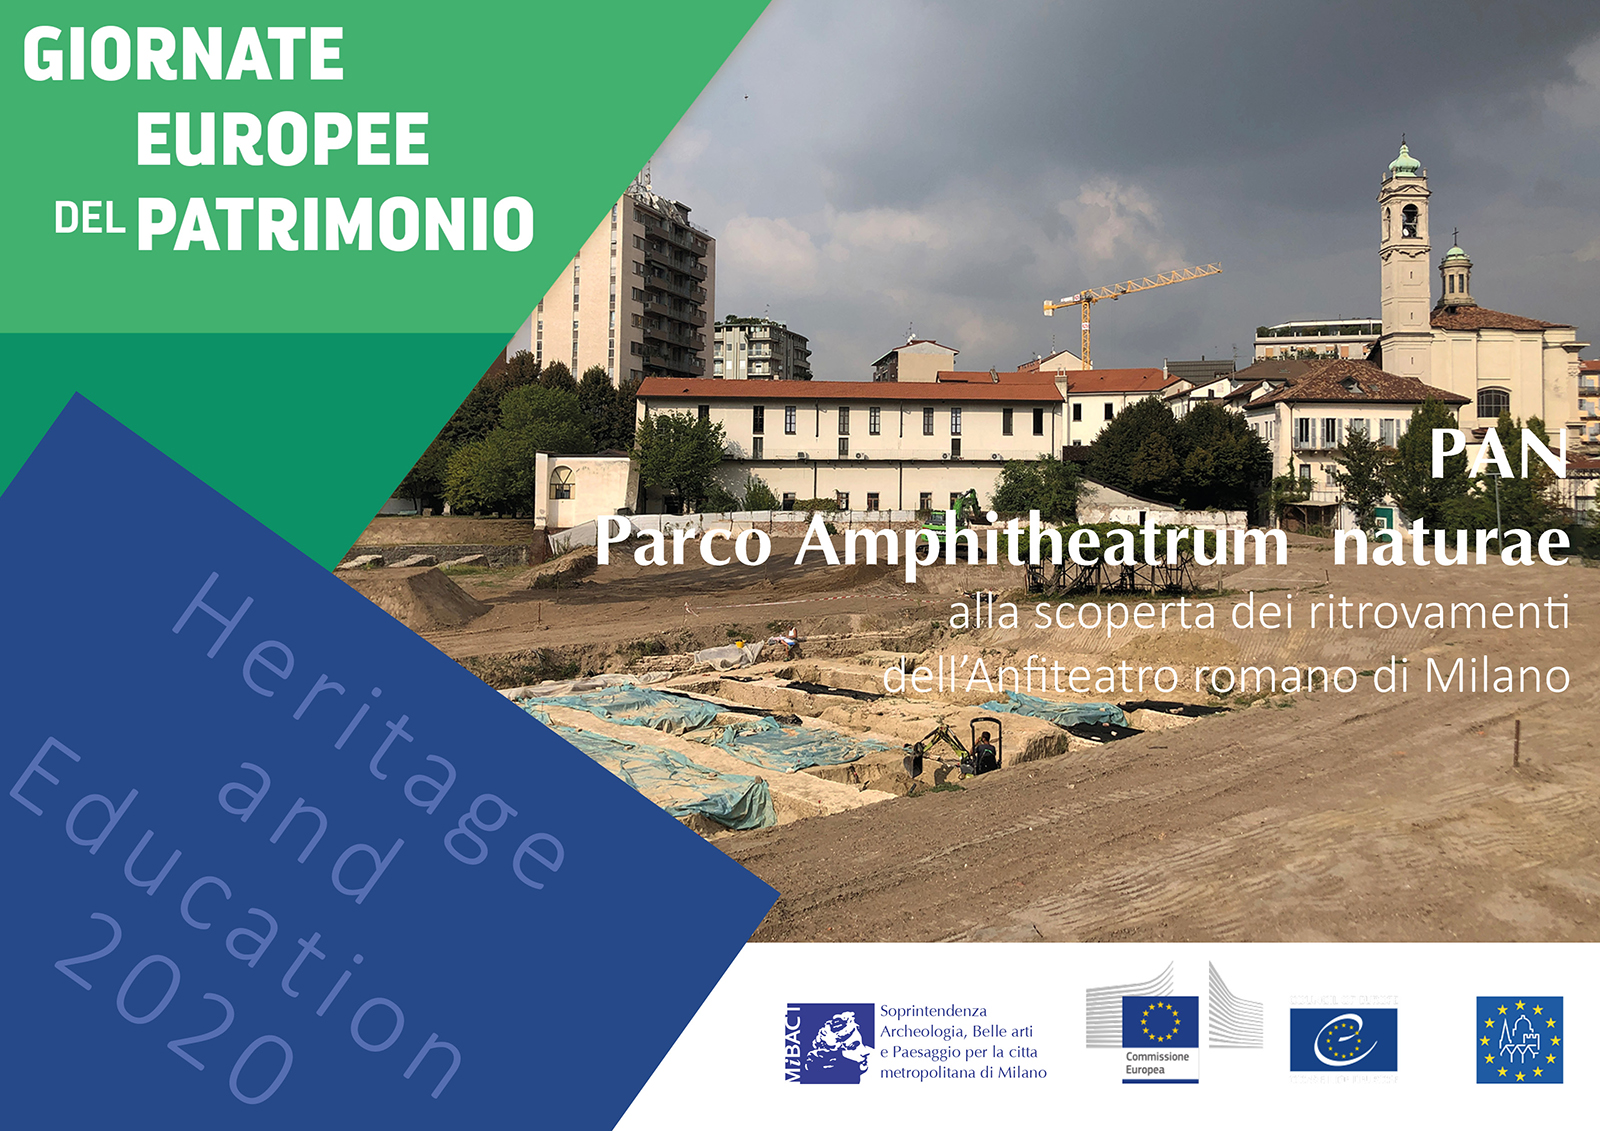 Giornate Europee del Patrimonio 2020 – APERTURA STRAORDINARIA DELL’ANFITEATRO ROMANO – Cartella Stampa